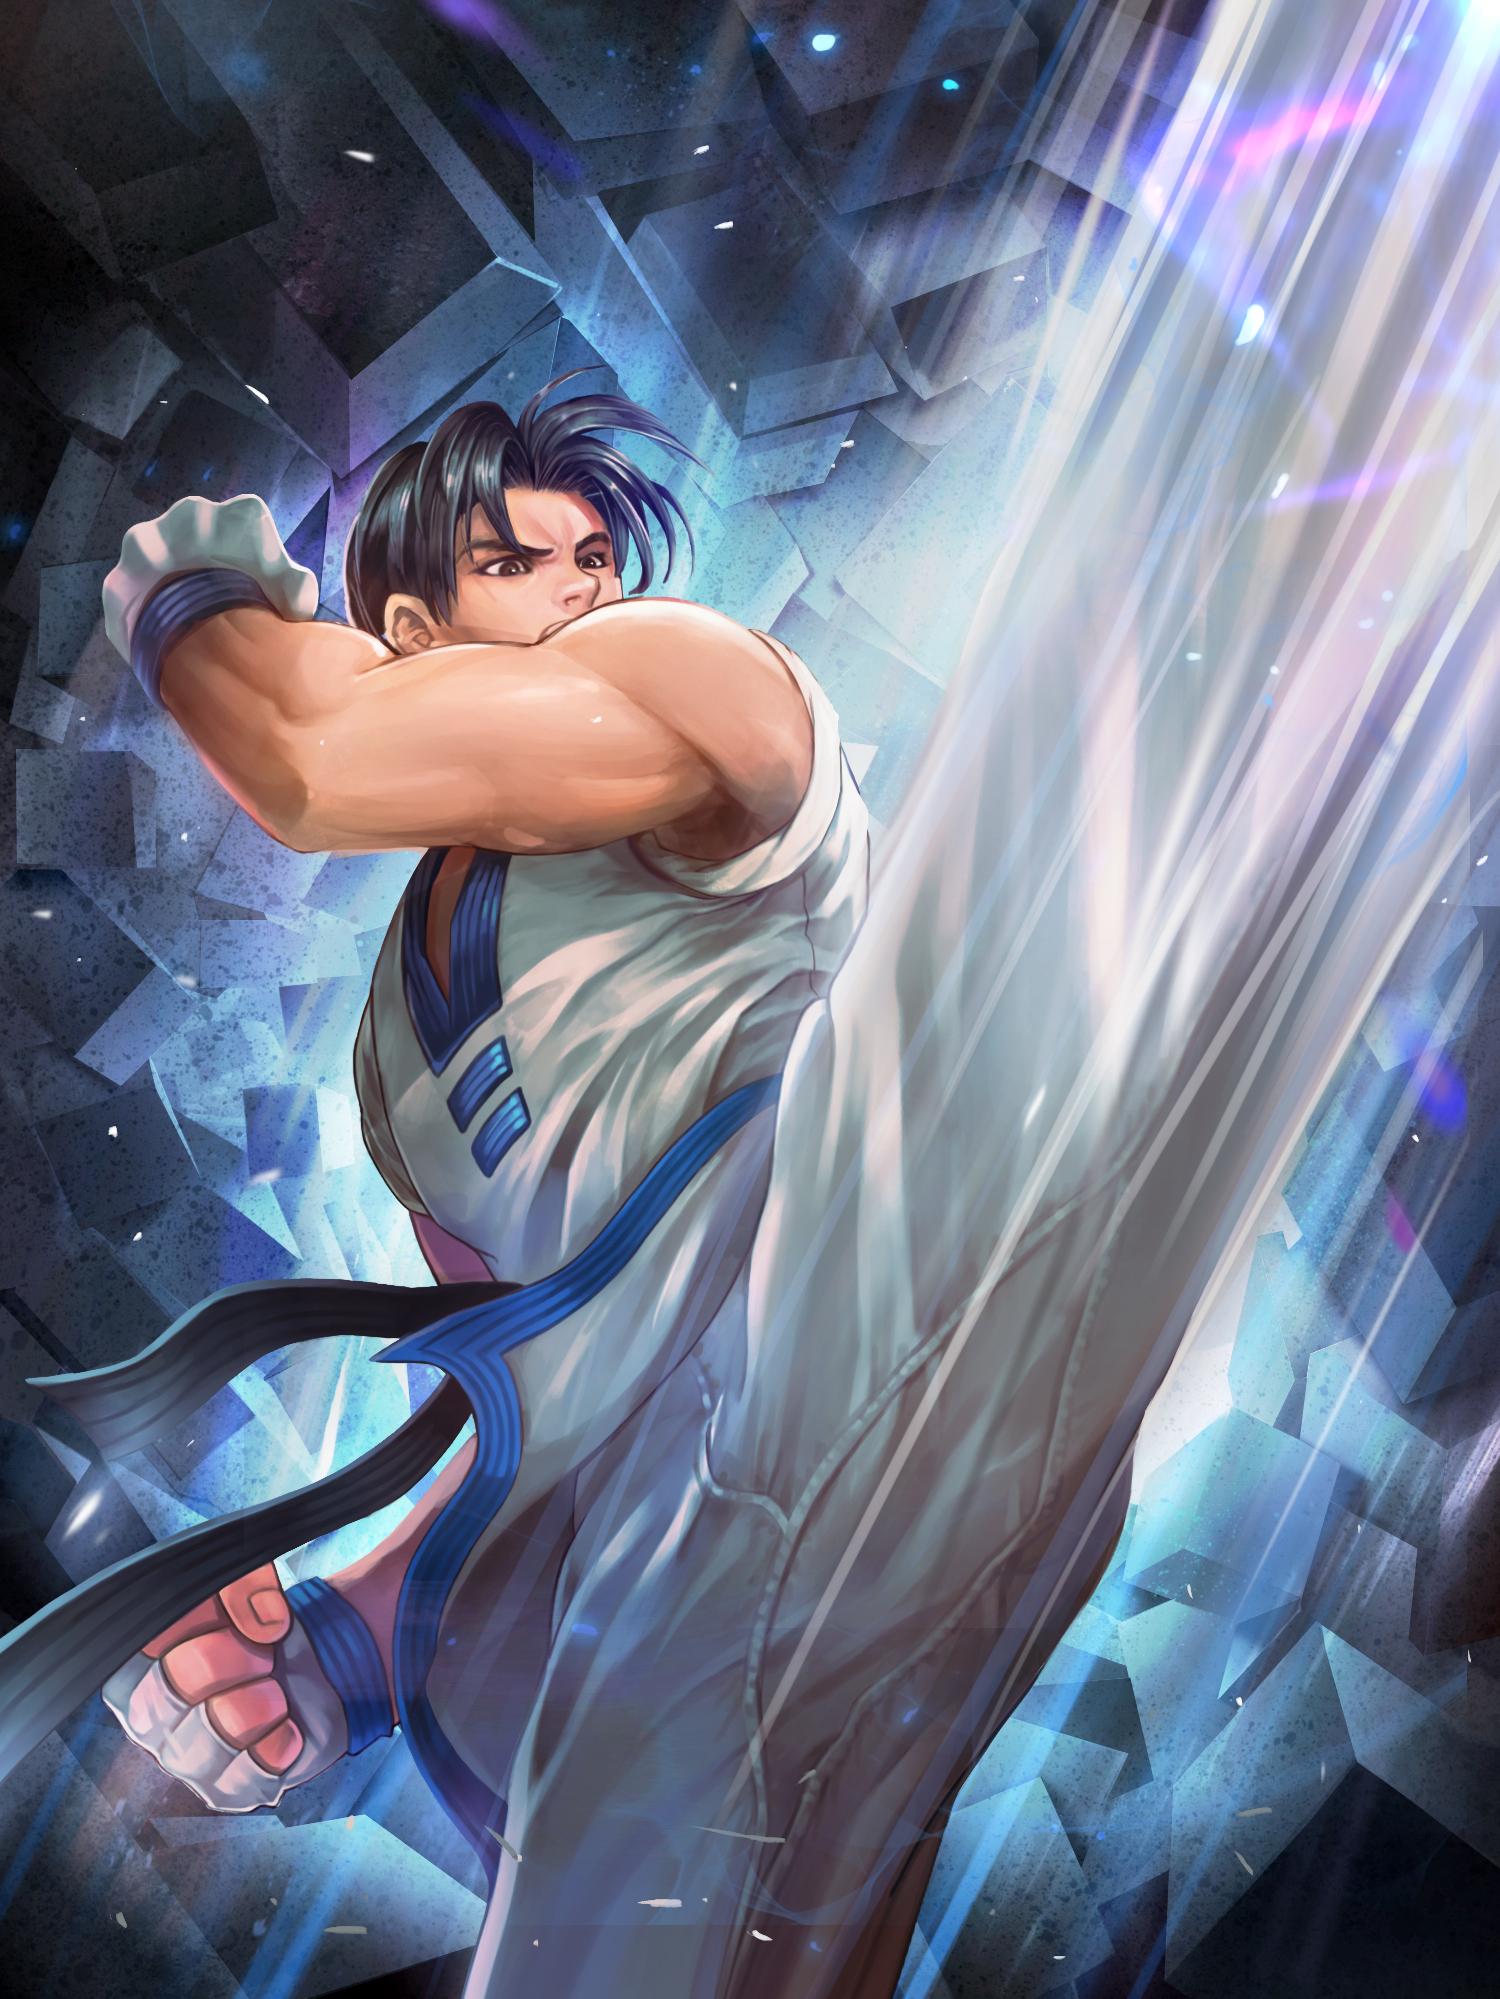 Kim Kaphwan The King Of Fighters Zerochan Anime Image Board